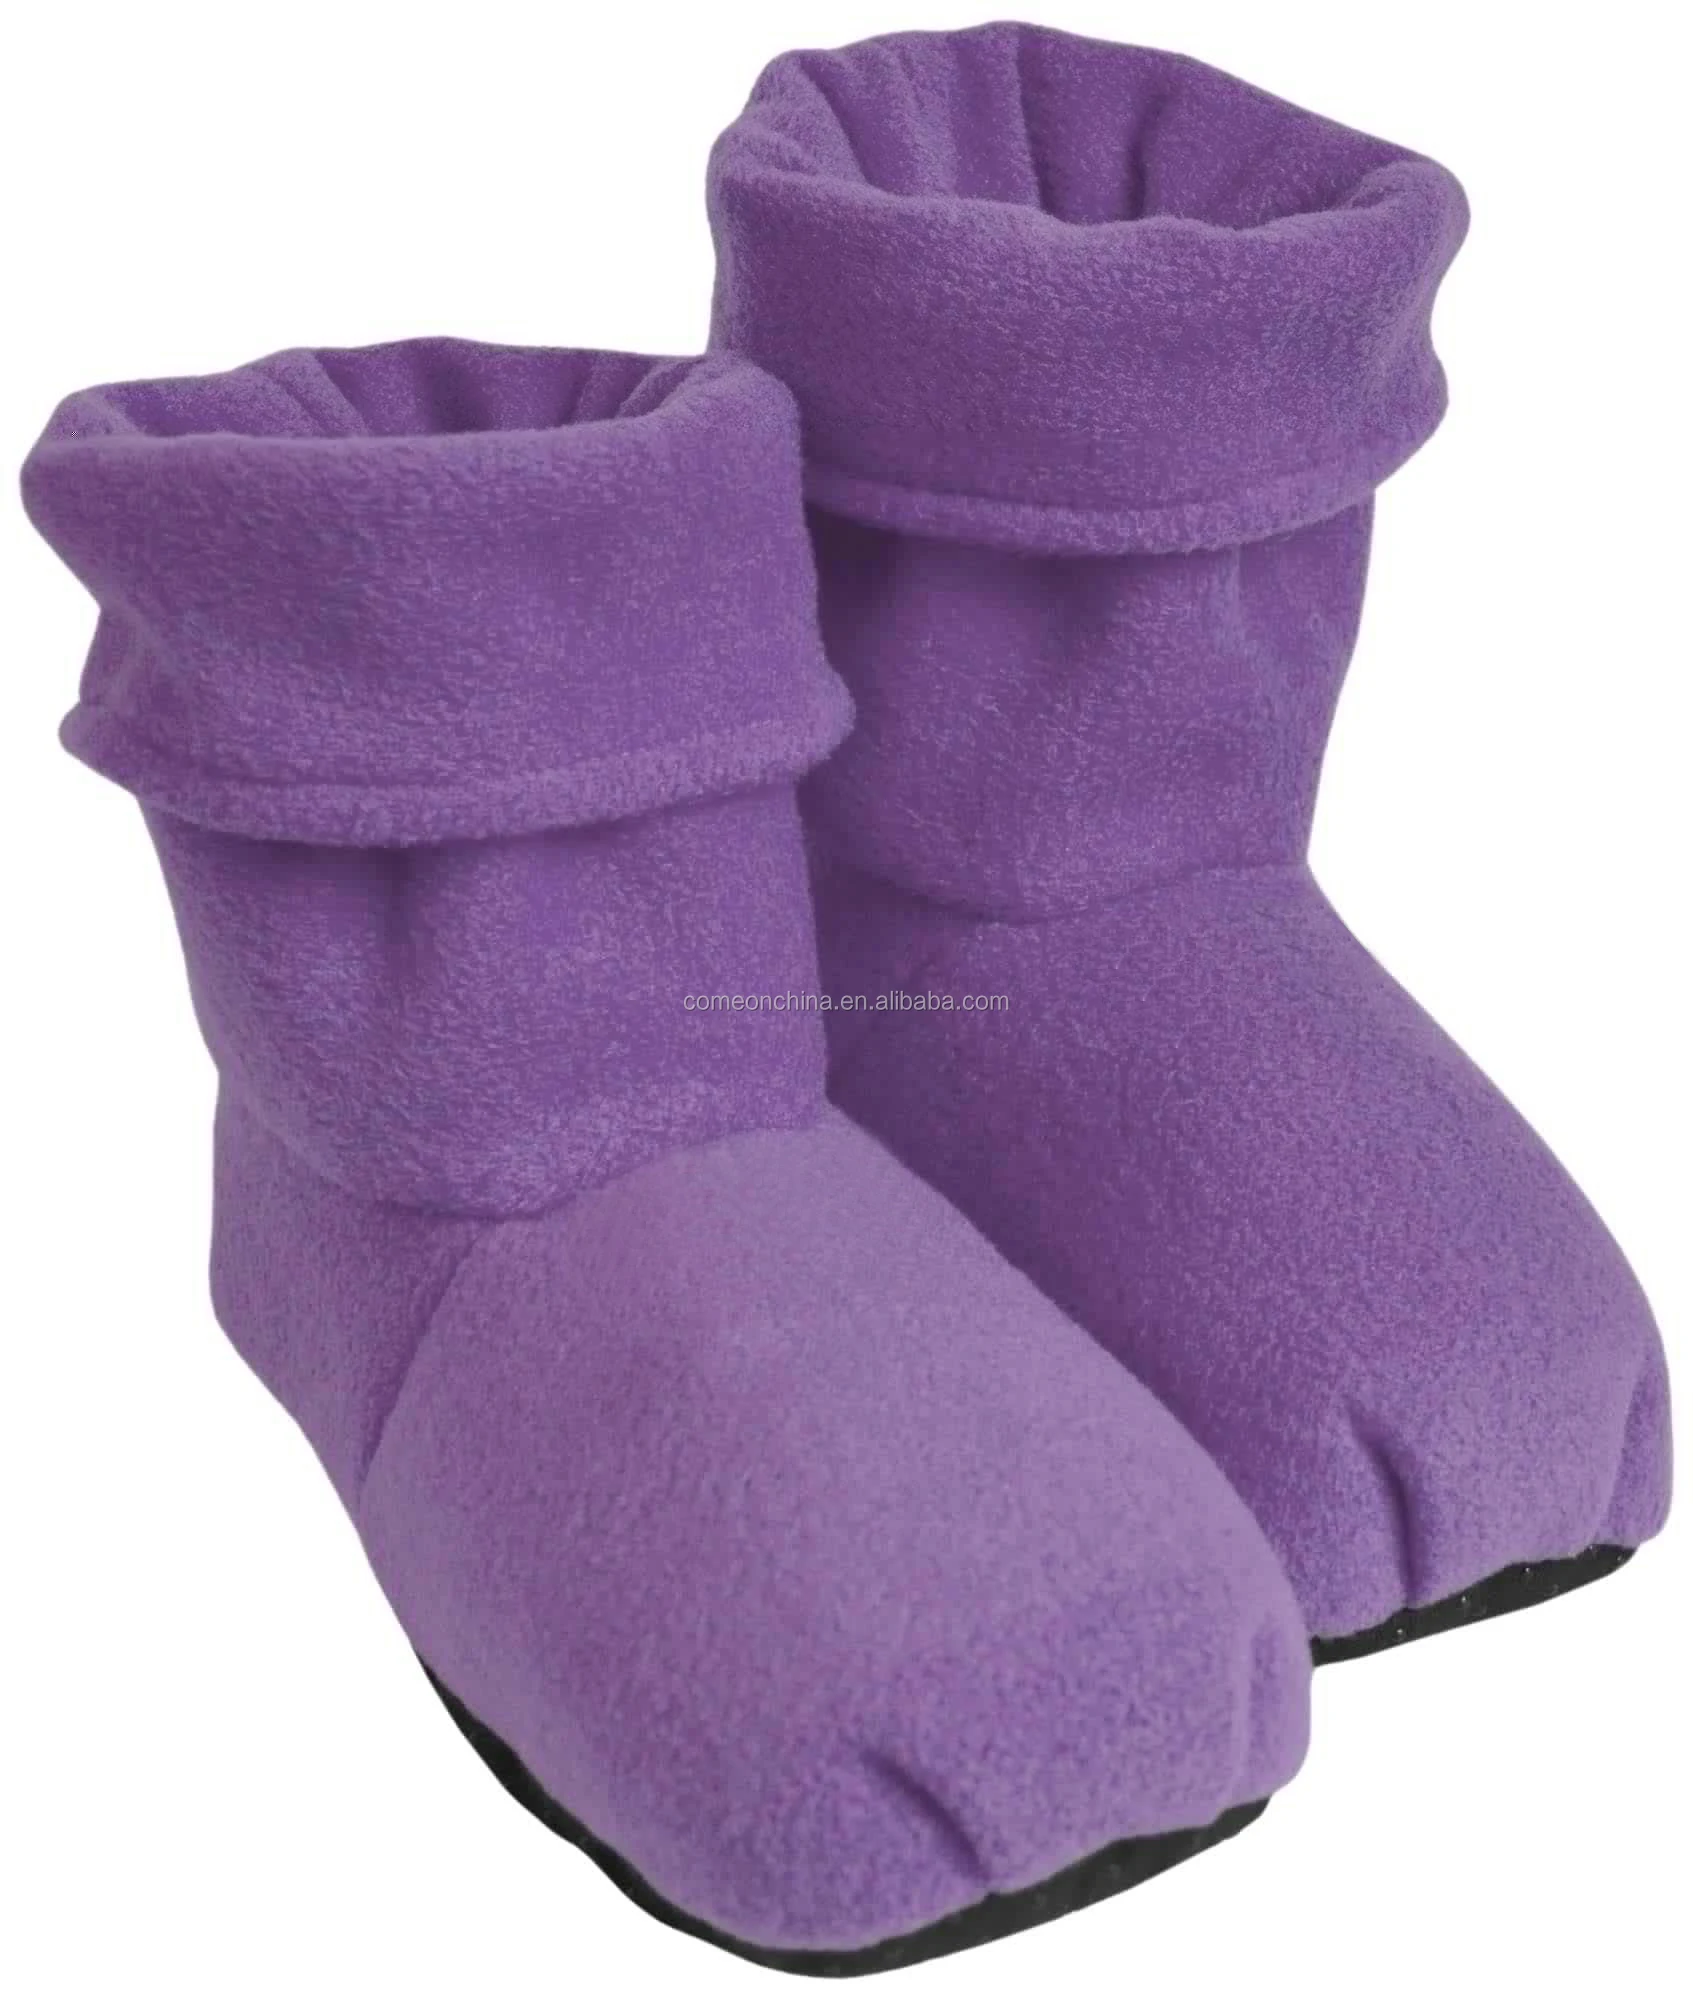 オープニング 紫 コールド靴下